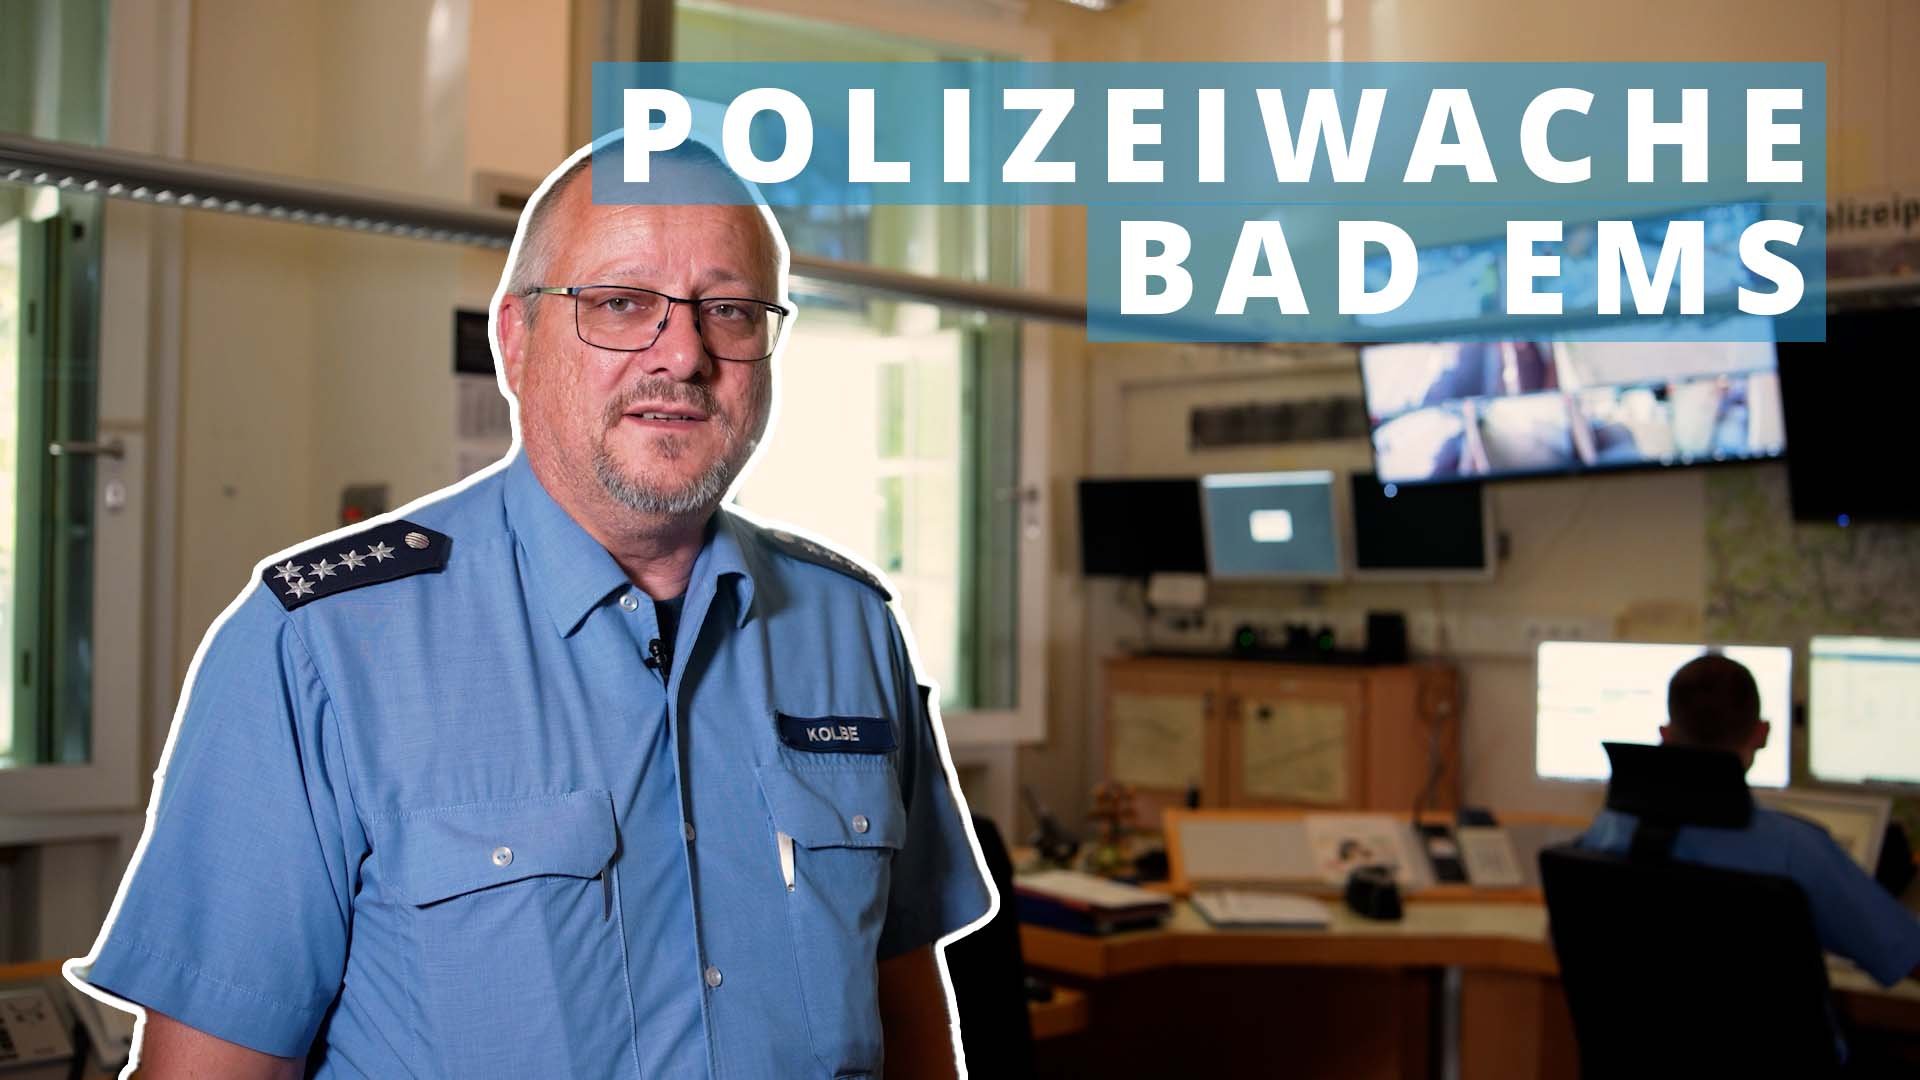 Polizeiwache Bad Ems: Eine der kleinsten Dienststellen mit viel Nähe zu den Bürgern